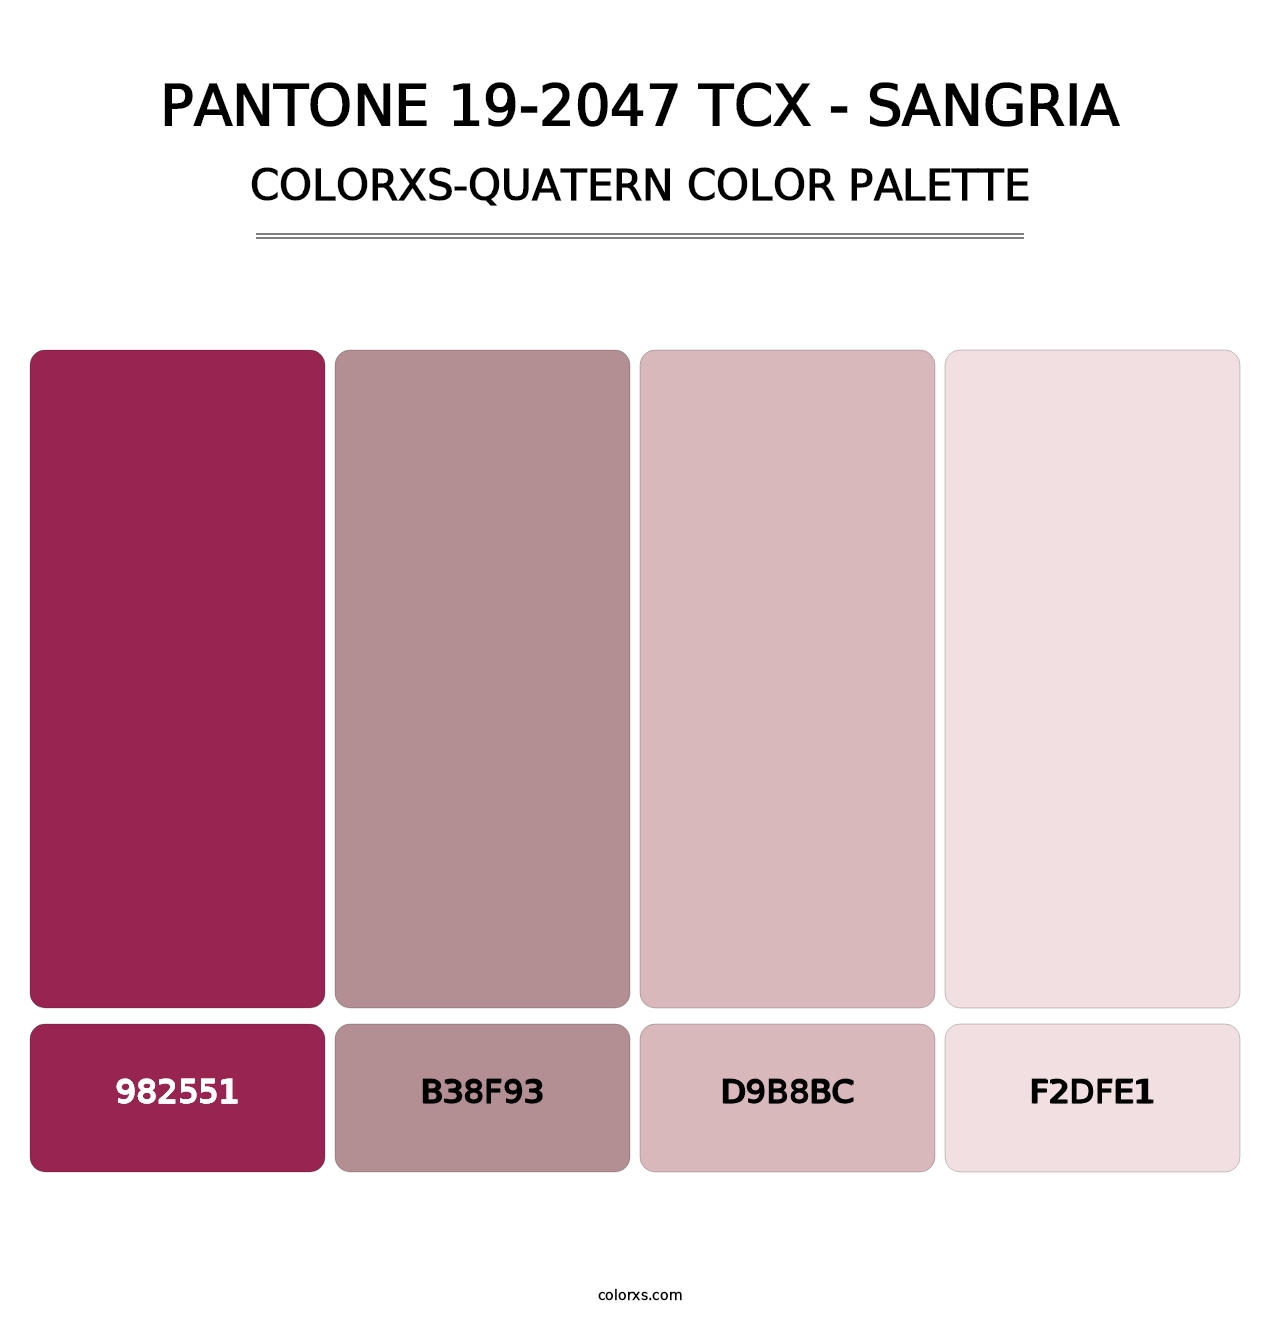 PANTONE 19-2047 TCX - Sangria - Colorxs Quatern Palette